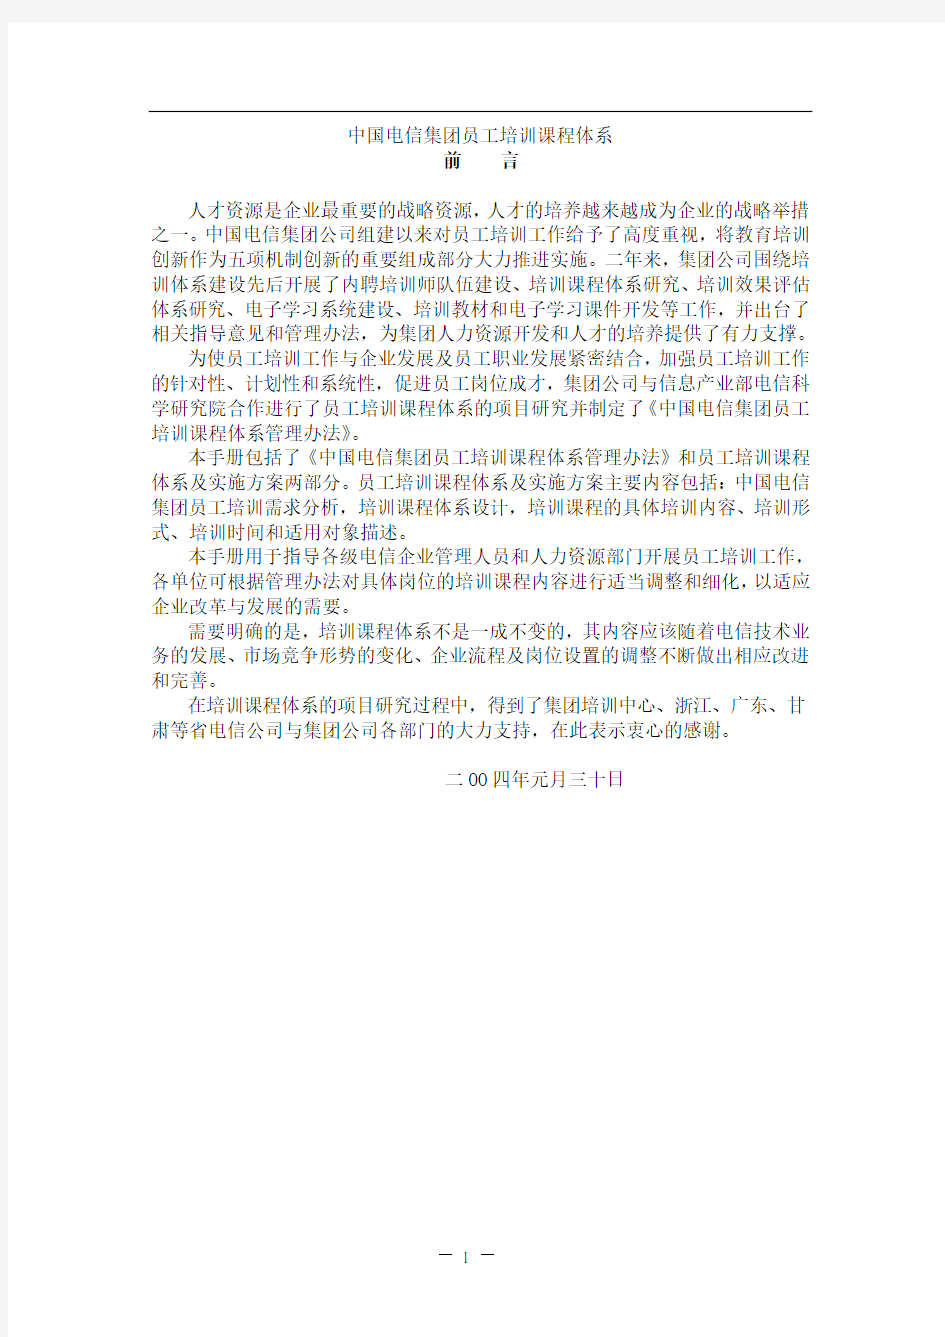 中国电信集团员工培训课程体系(272页)